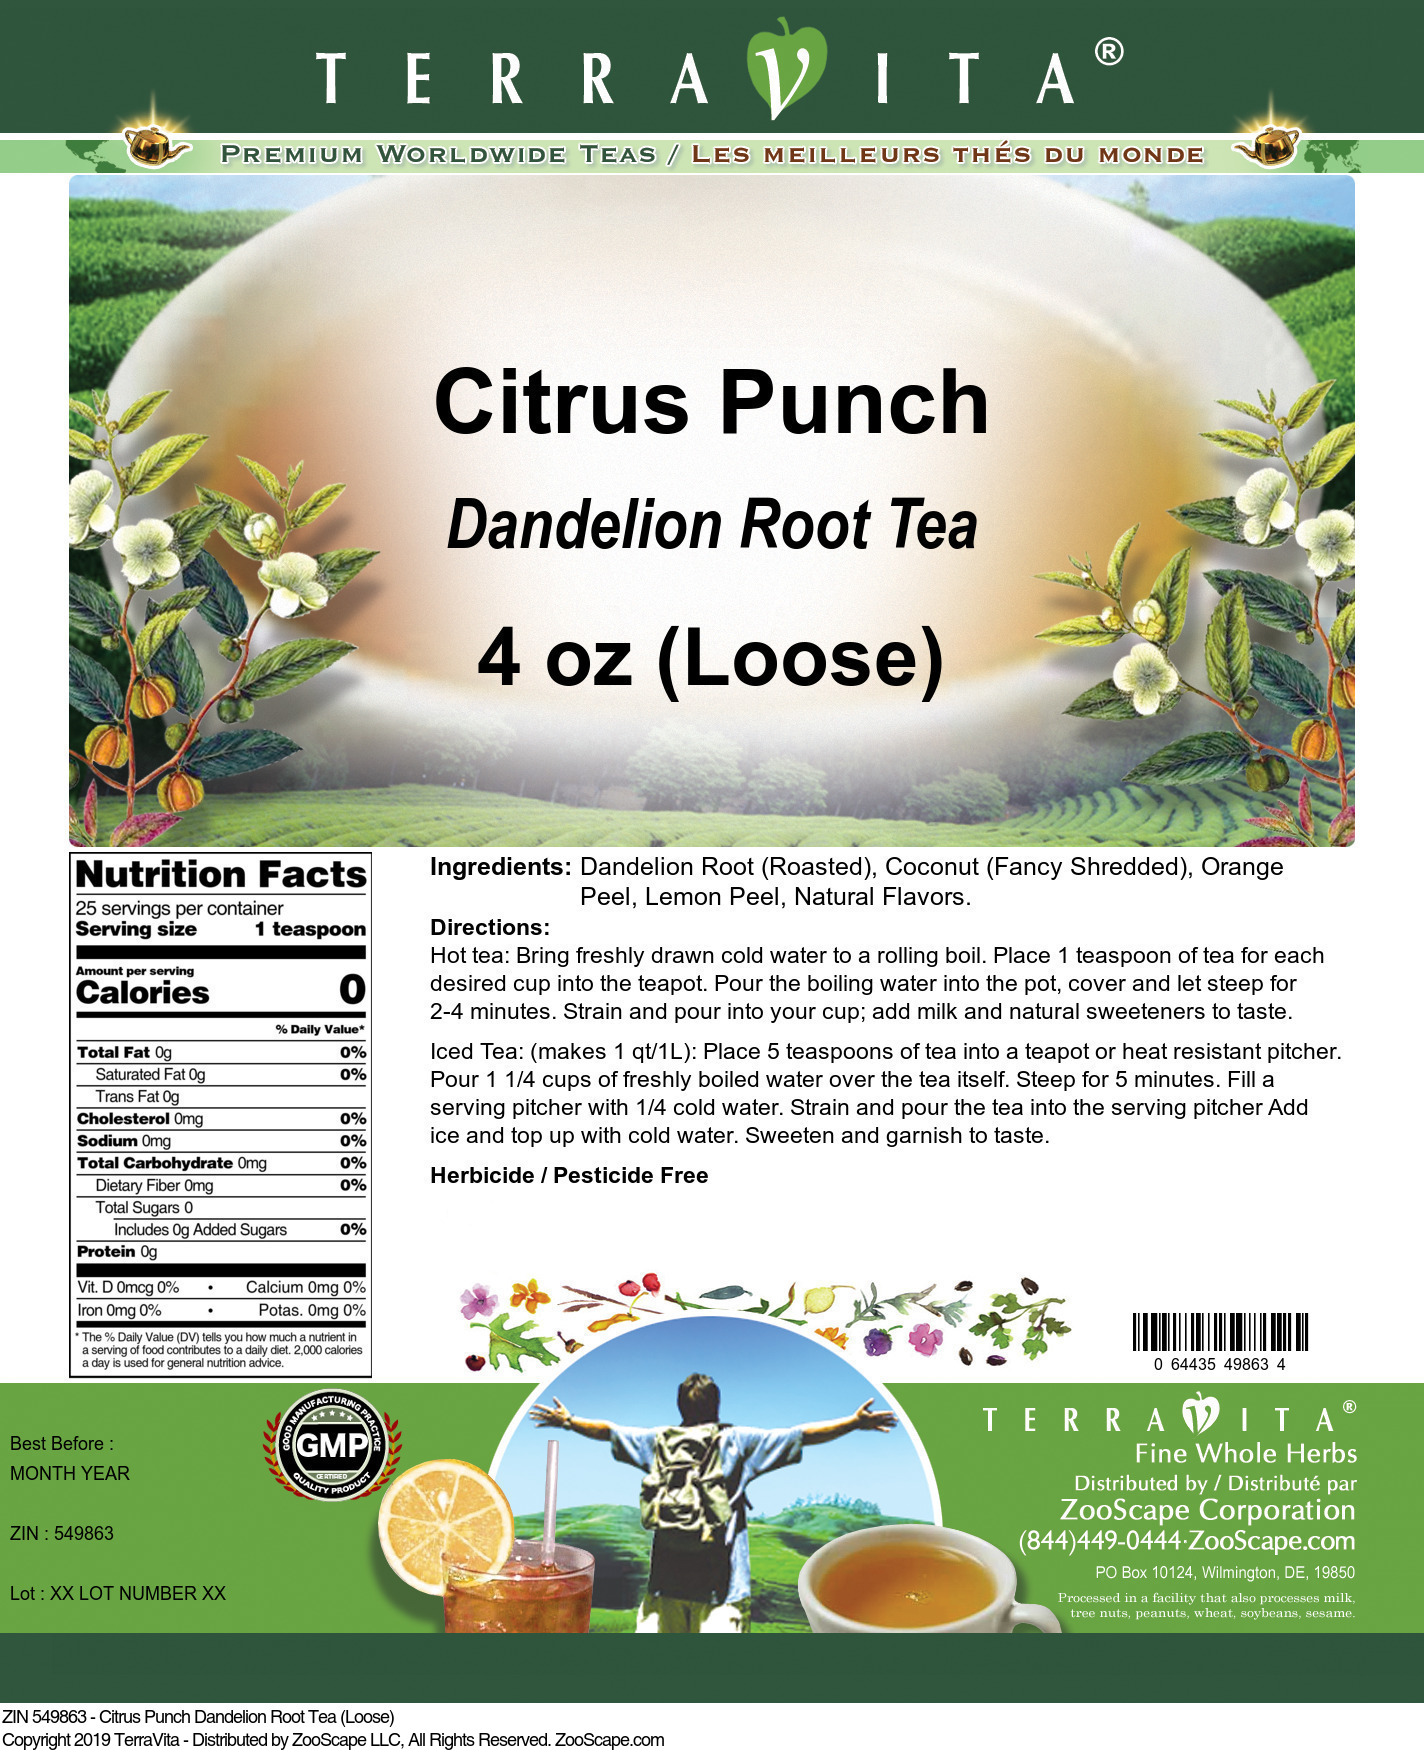 Citrus Punch Dandelion Root Tea (Loose) - Label